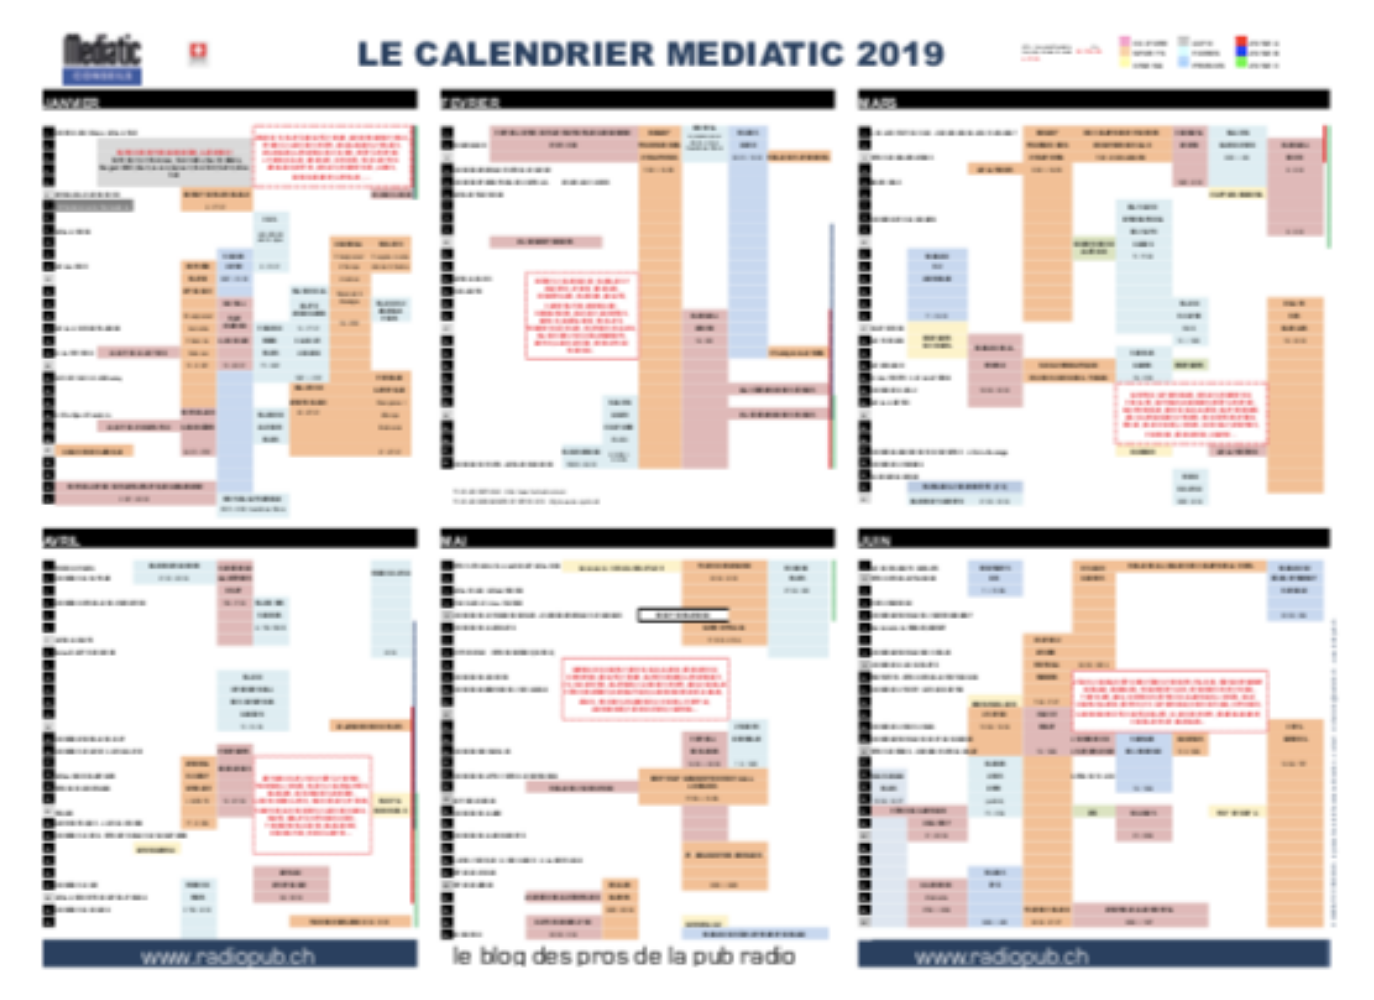 Le Calendrier Mediatic 2019 est déjà disponible